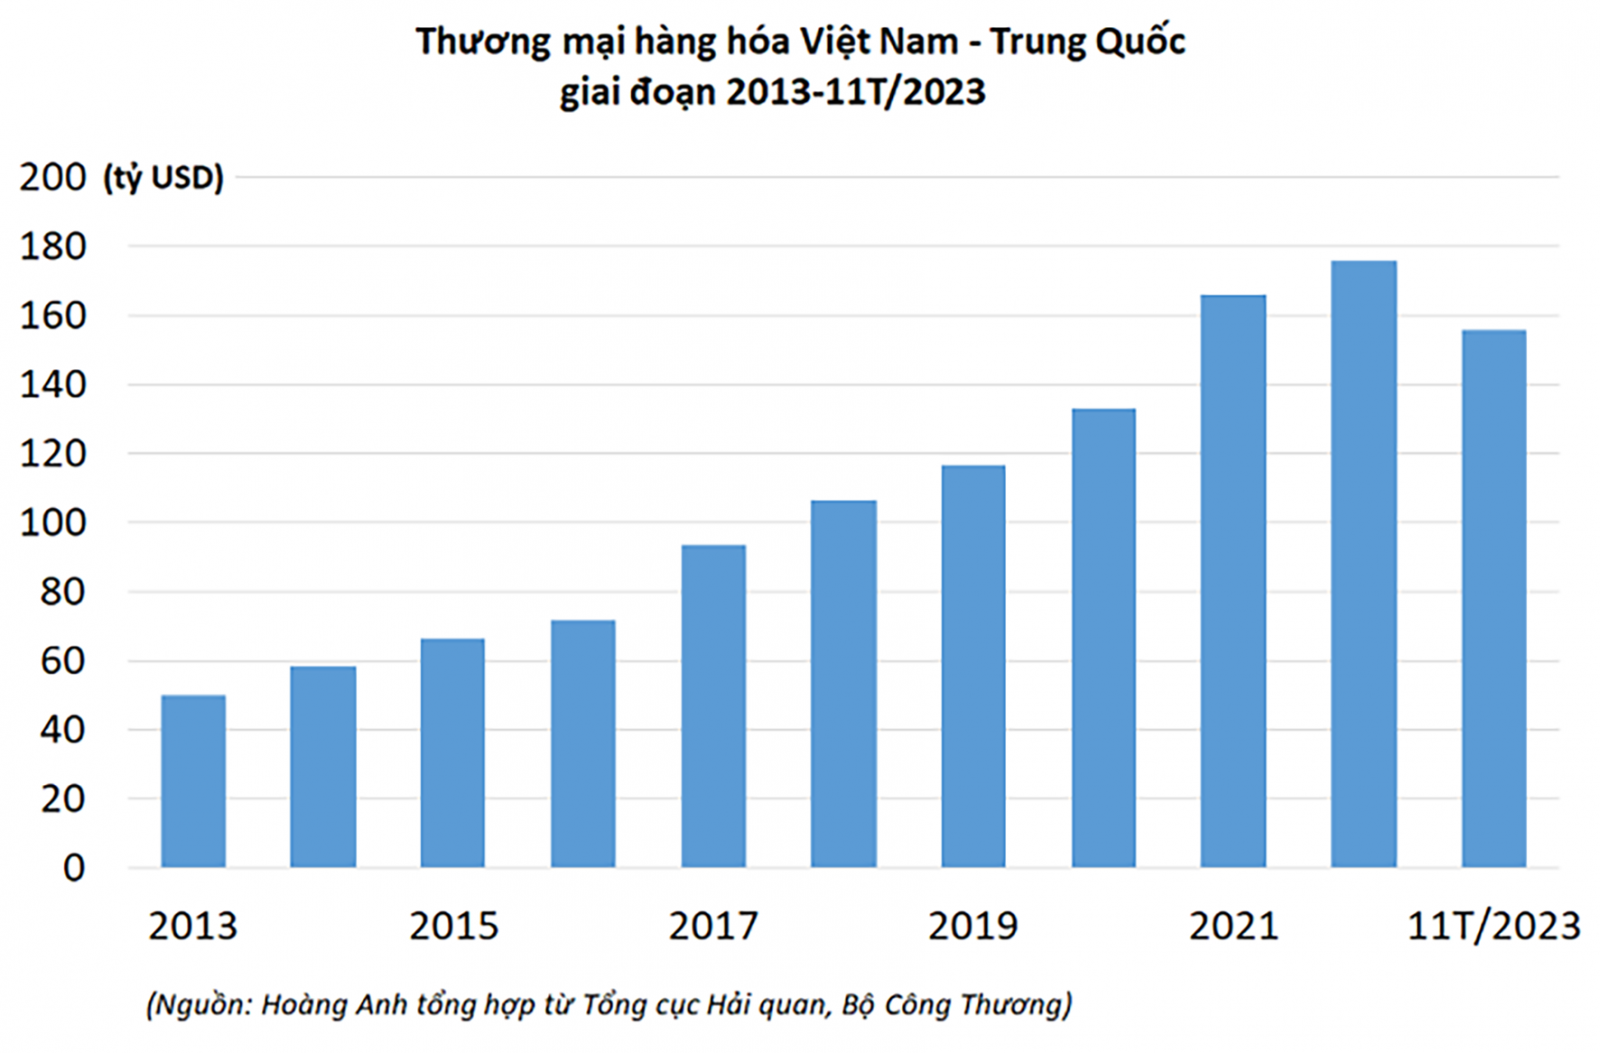 p/Thương mại hàng hóa Việt Nam - Trung Quốc giai đoạn 2013 - 11T/2023. Nguồn: Bộ Công Thương